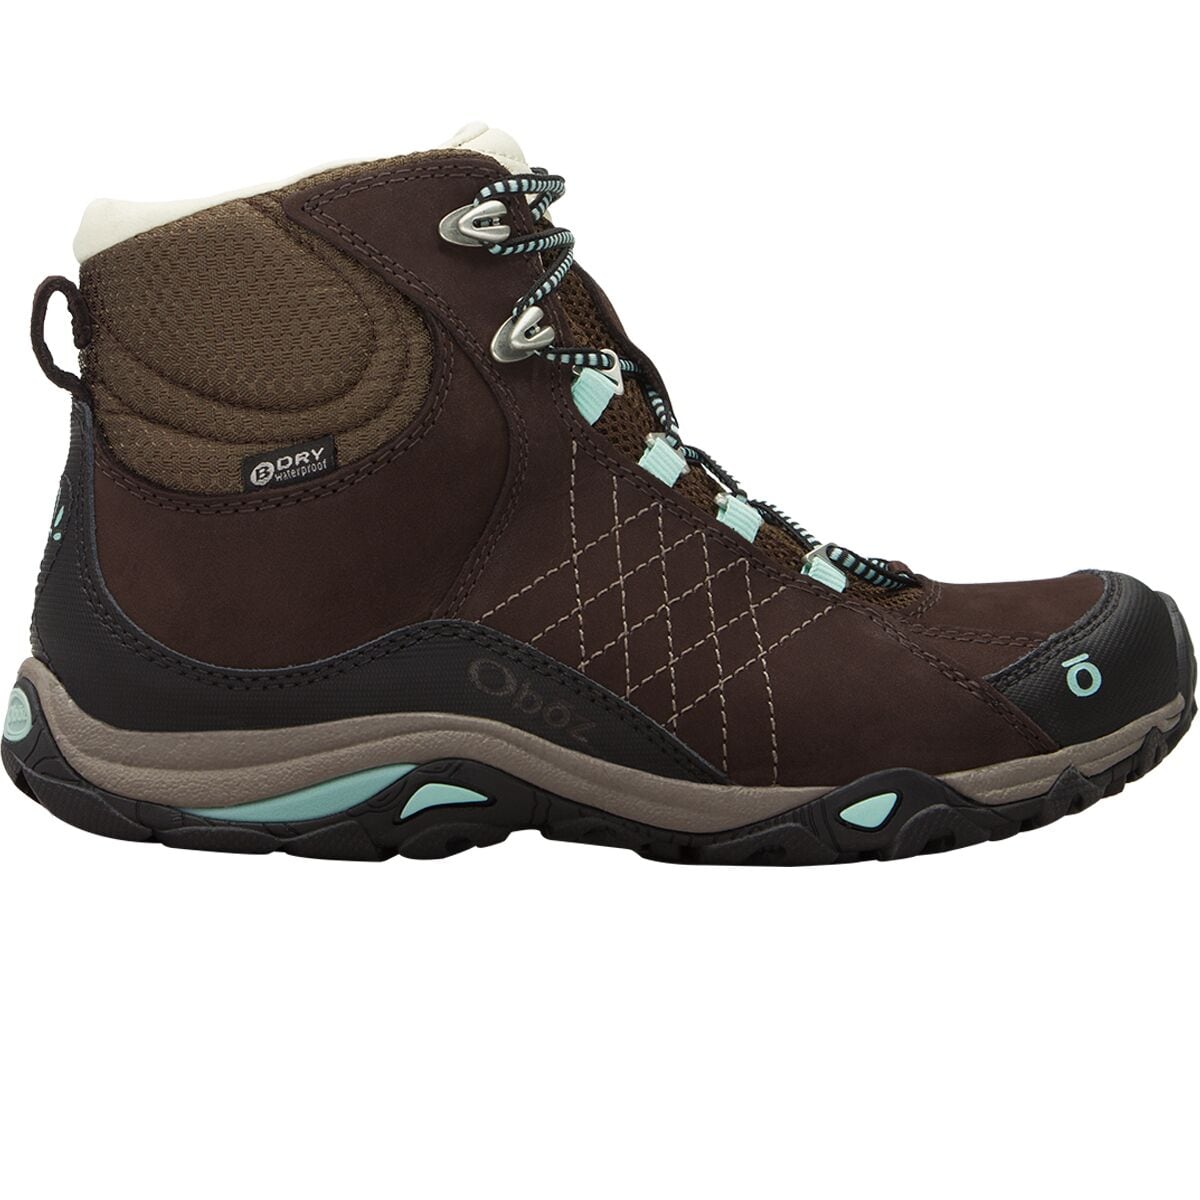 Sapphire Mid B-Dry Hiking Boot - Women